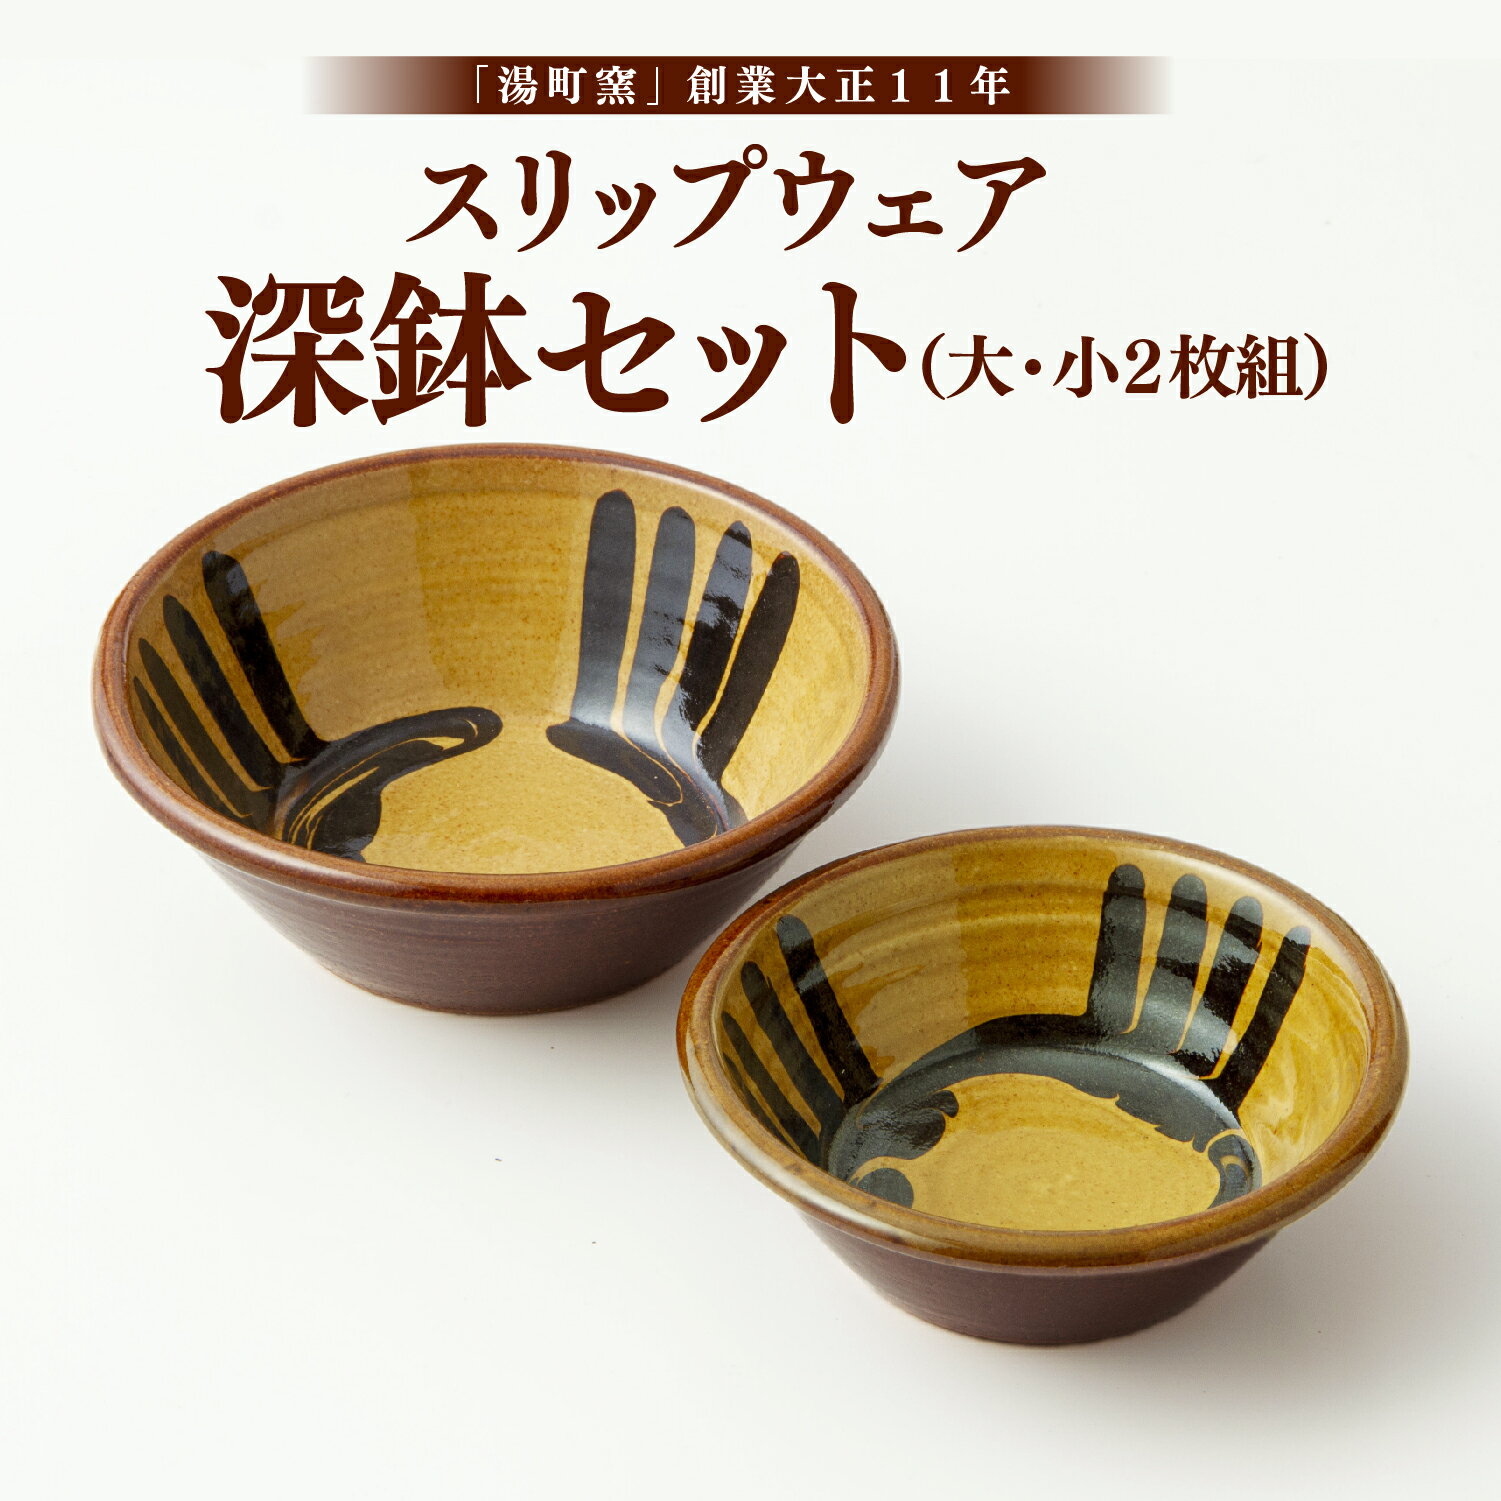 スリップウェア 深鉢セット(大・小2枚組) 食器 皿 バーナード・リーチ 湯町窯 手作り 松江 《135-03》